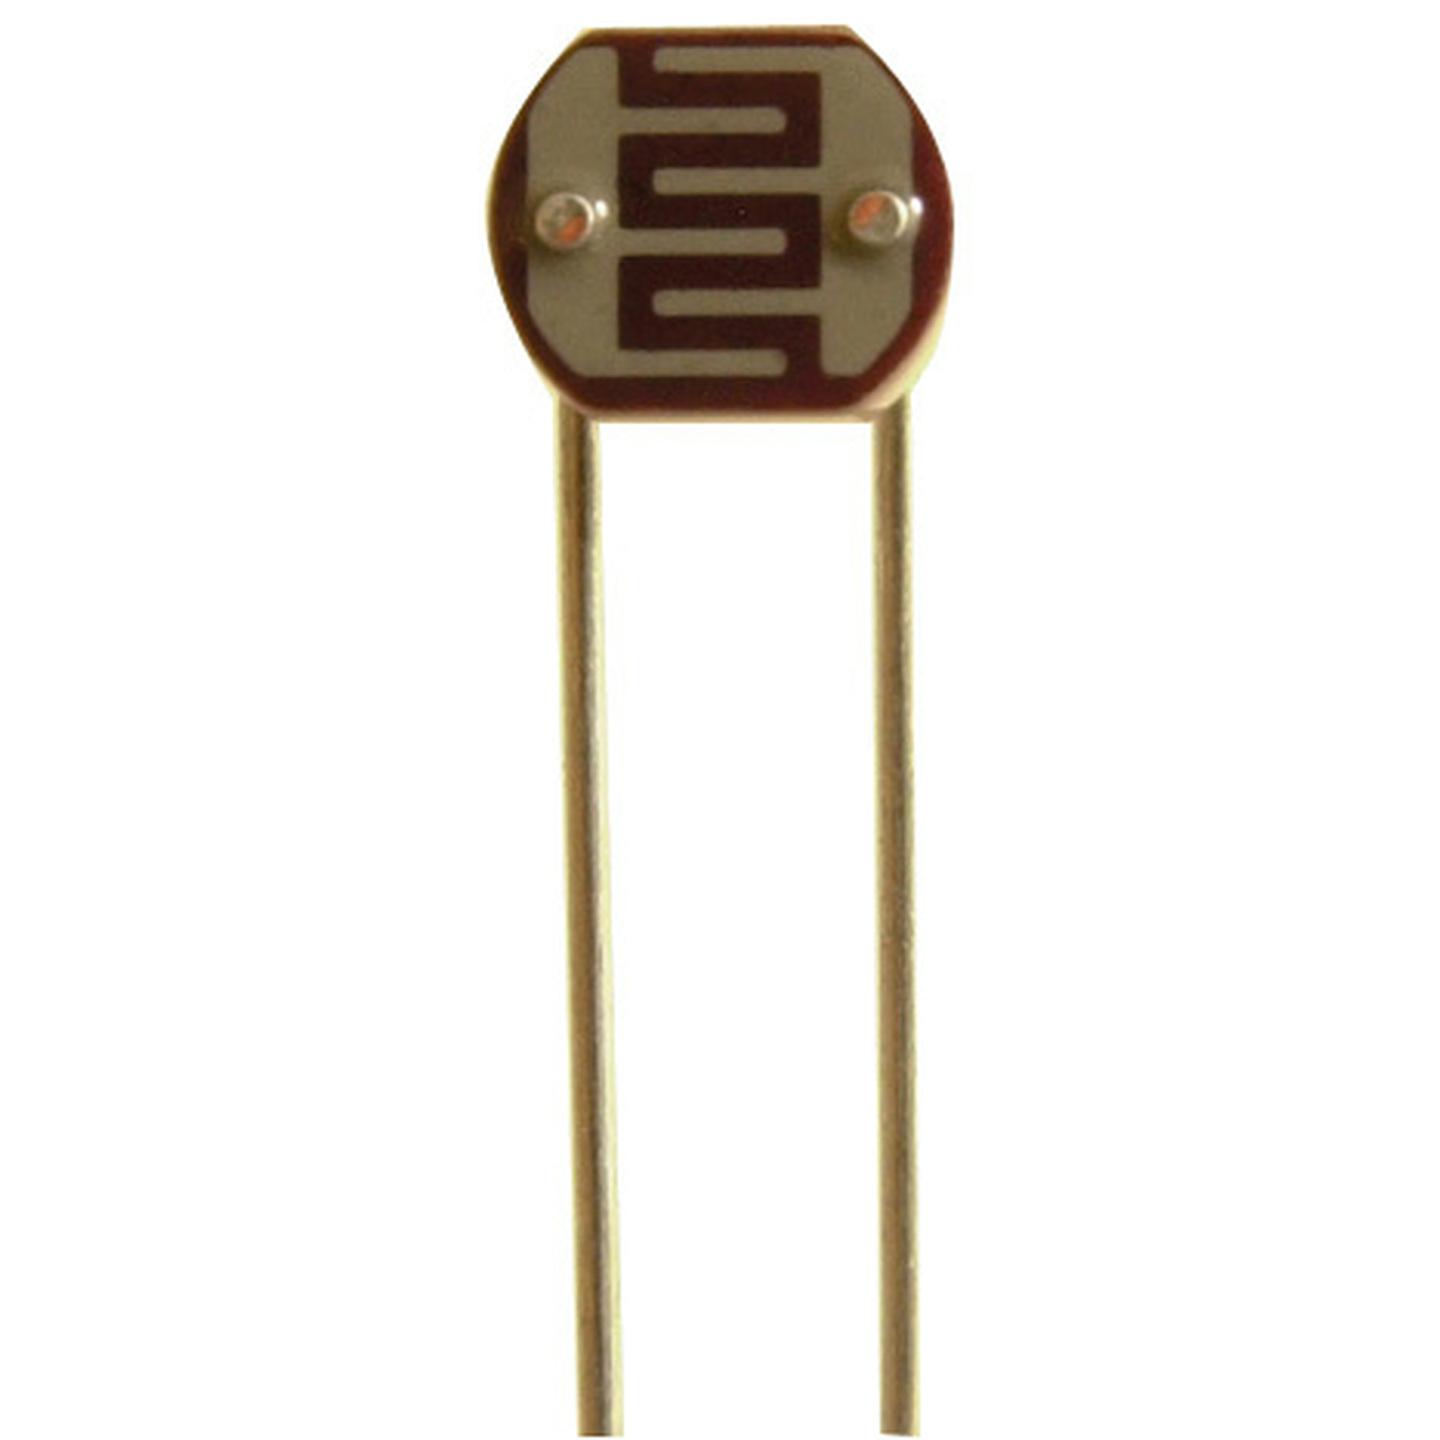 Small Light Dependent Resistor LDR